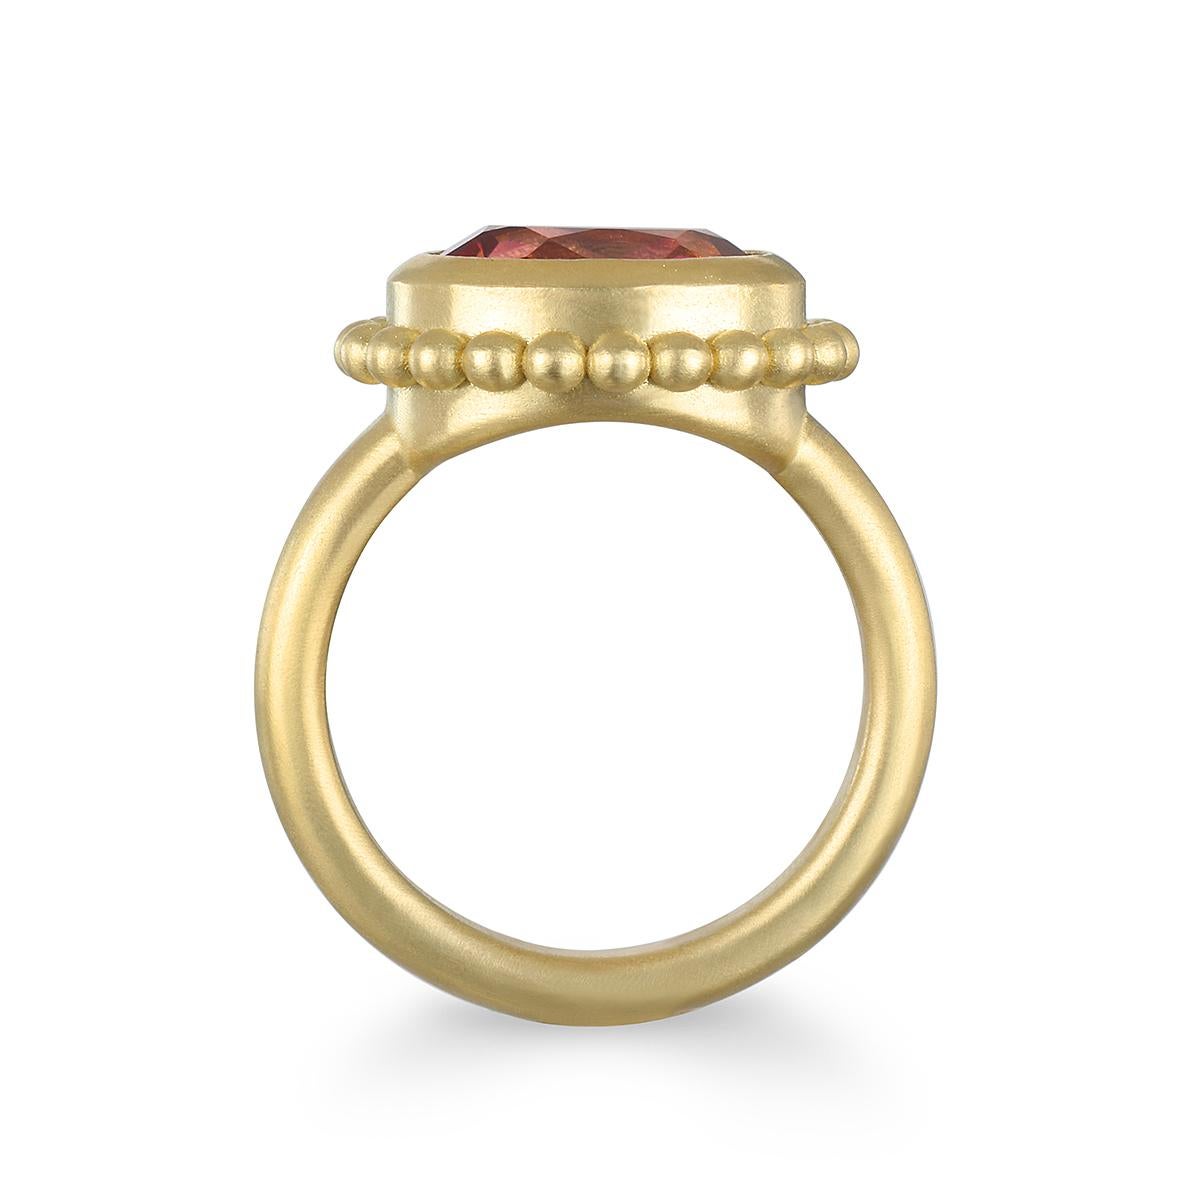 Der von Faye Kim in Handarbeit aus 18 Karat Gold gefertigte rosafarbene Turmalin im Smaragdschliff mit seinem leuchtenden Farbton ist mit einem Kranz aus Granulatkugeln eingefasst und verleiht dem Ring einen zeitlosen, klassischen Stil.

Turmalin: 